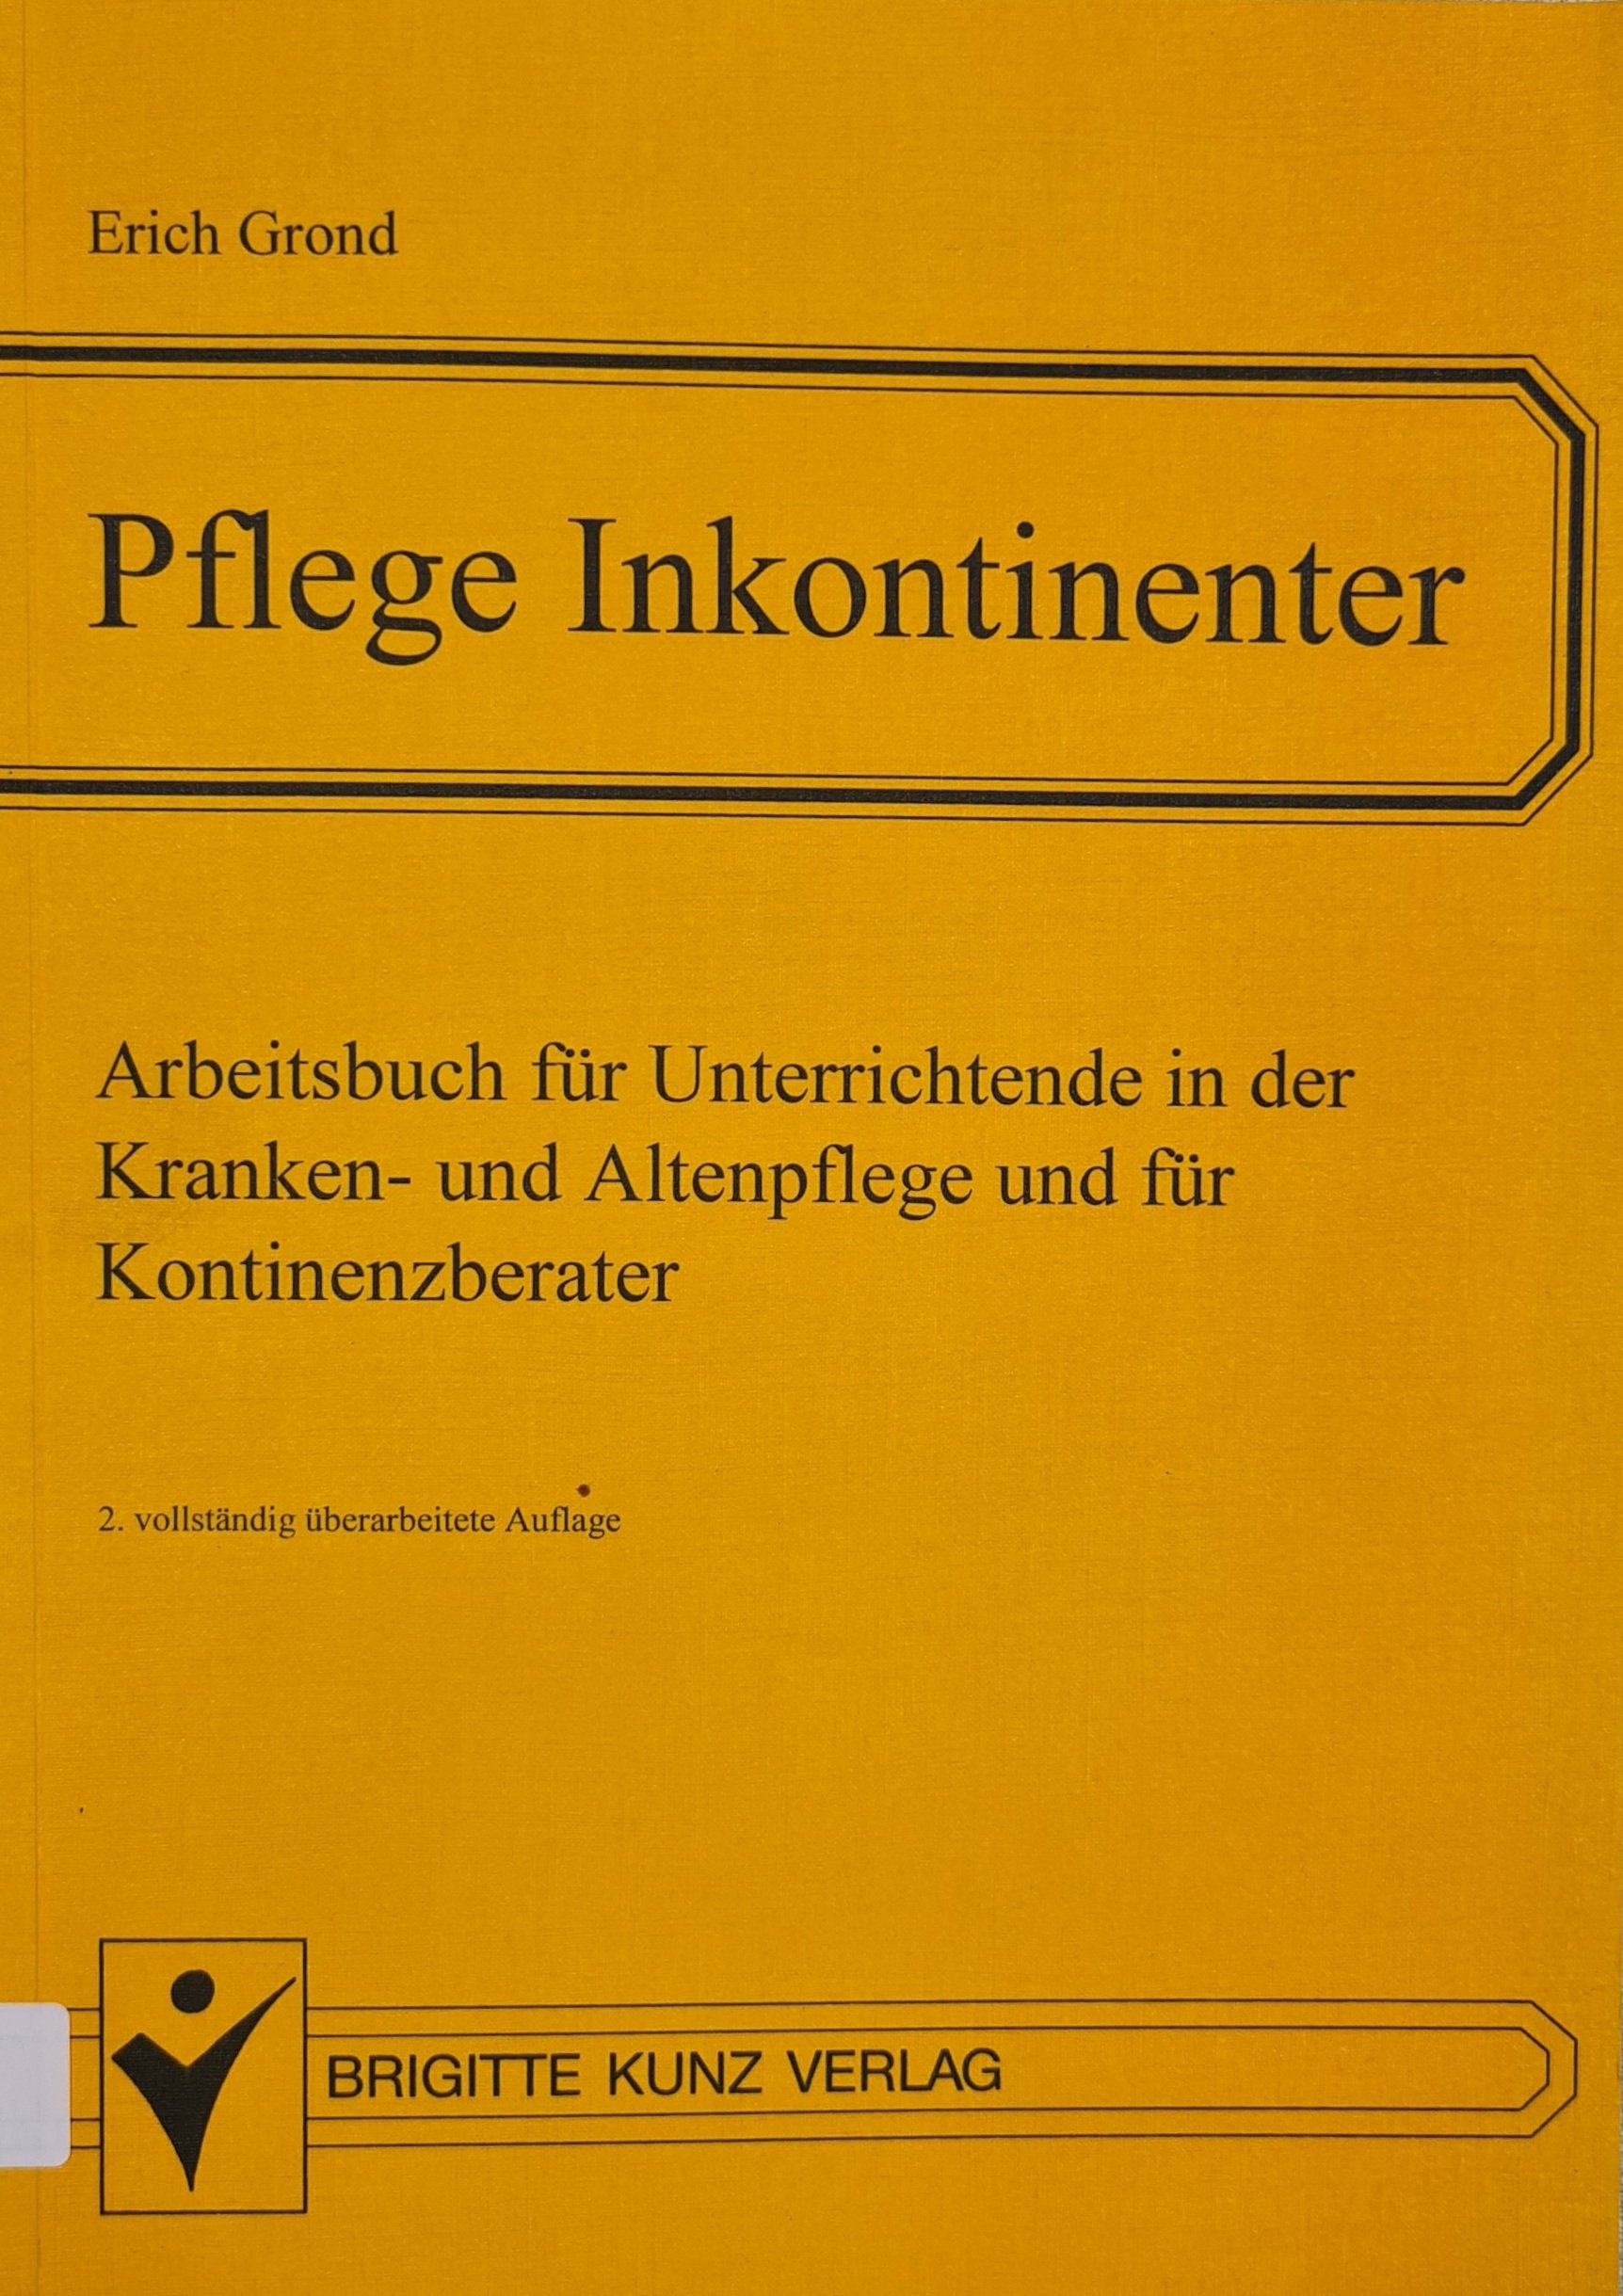 Pflege Inkontinenter (Krankenhausmuseum Bielefeld e.V. CC BY-NC-SA)